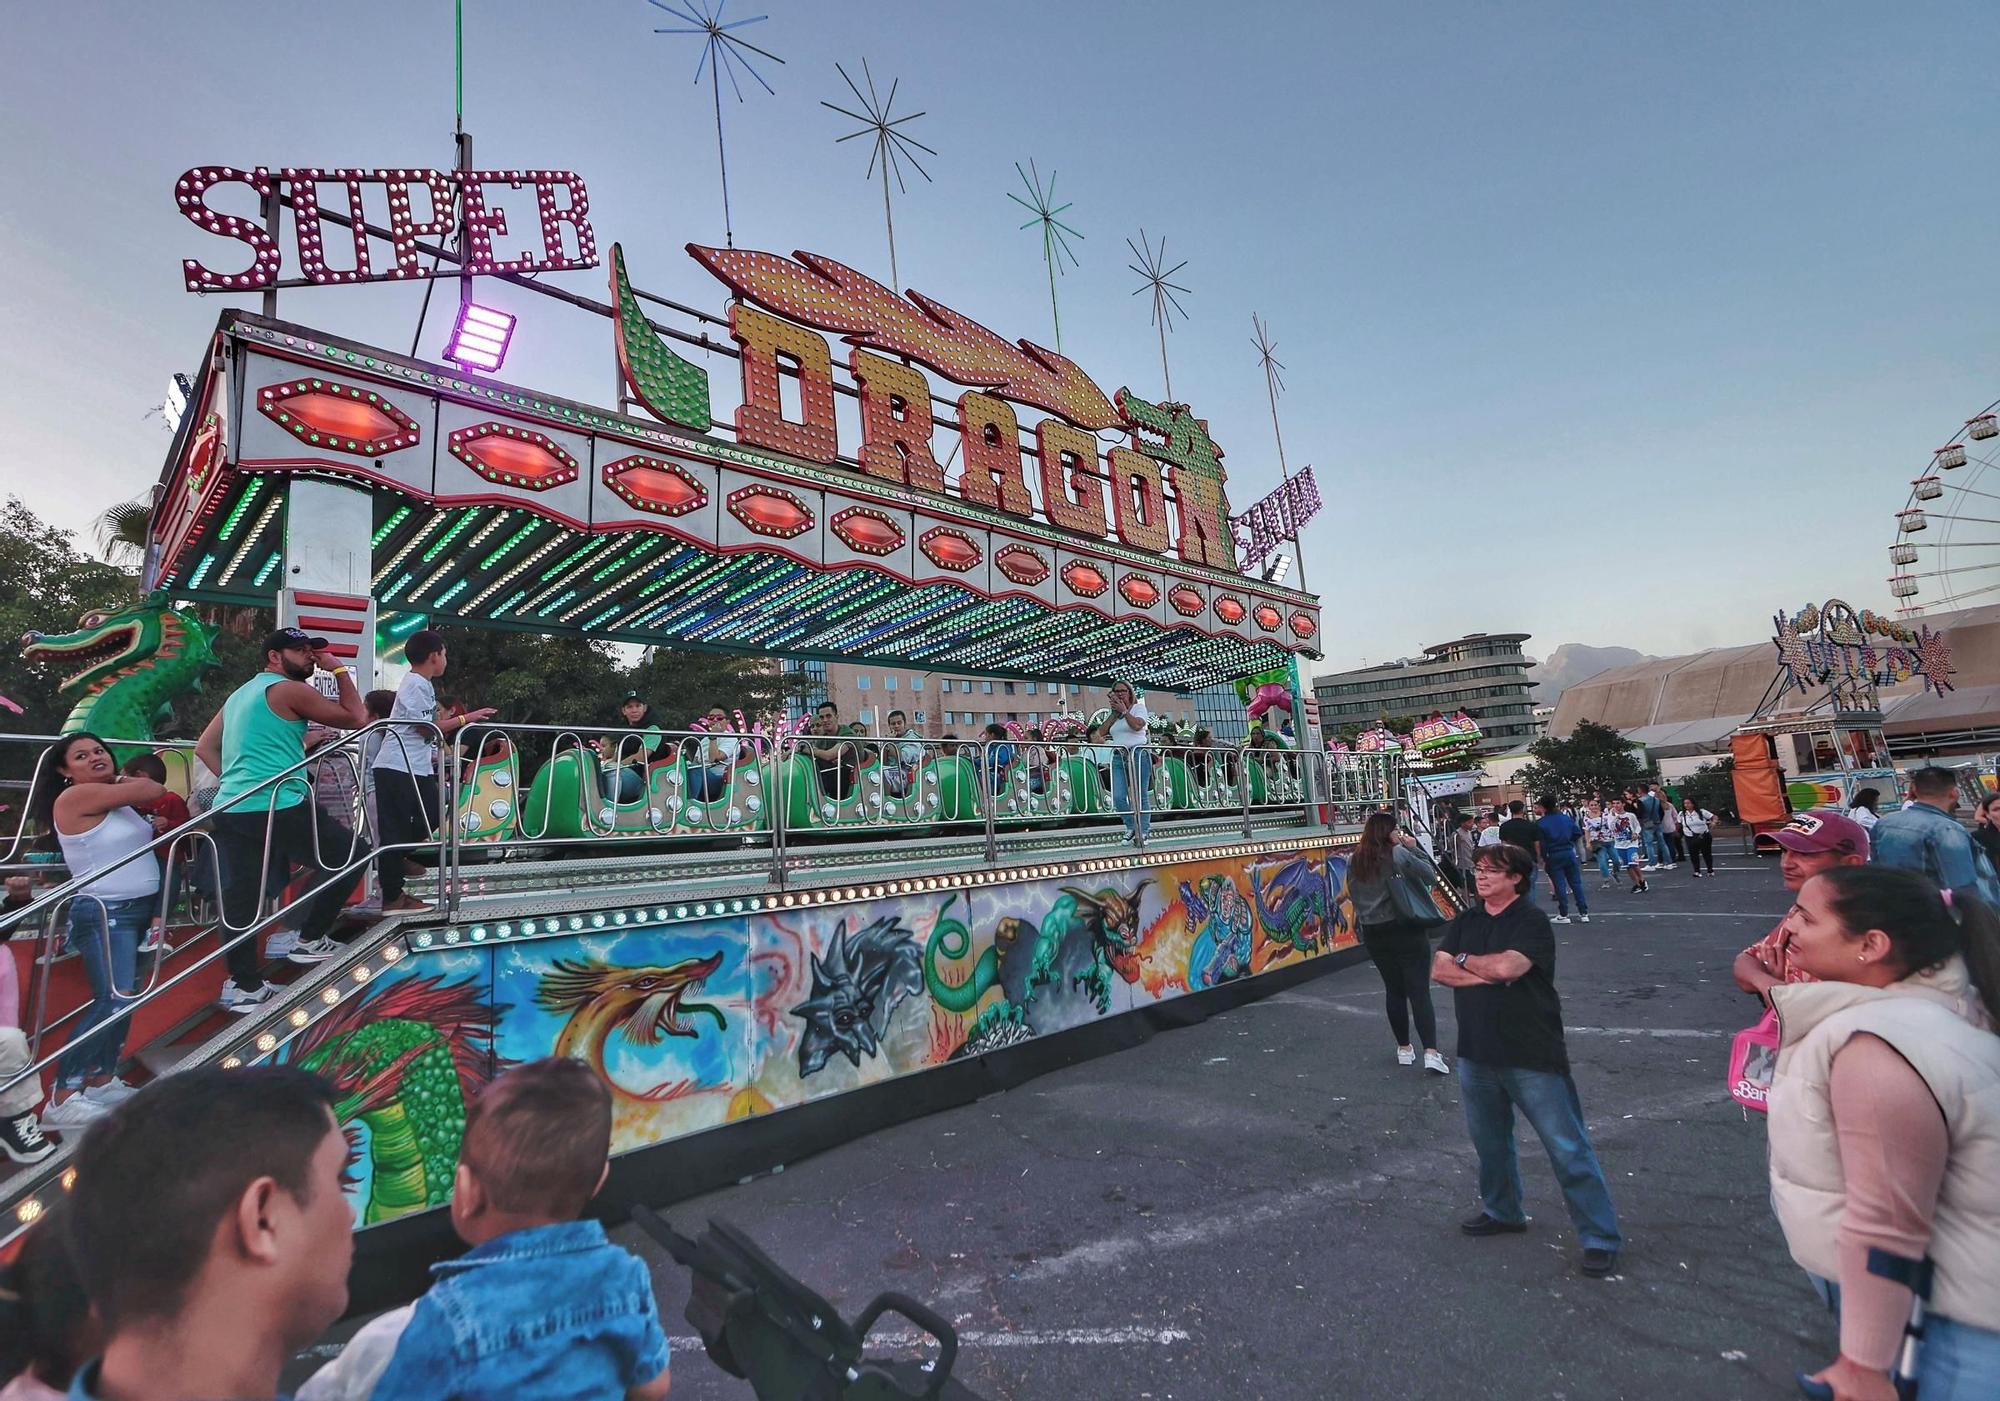 La feria de atracciones del Carnaval de Santa Cruz abre para menores en riesgo de exclusión